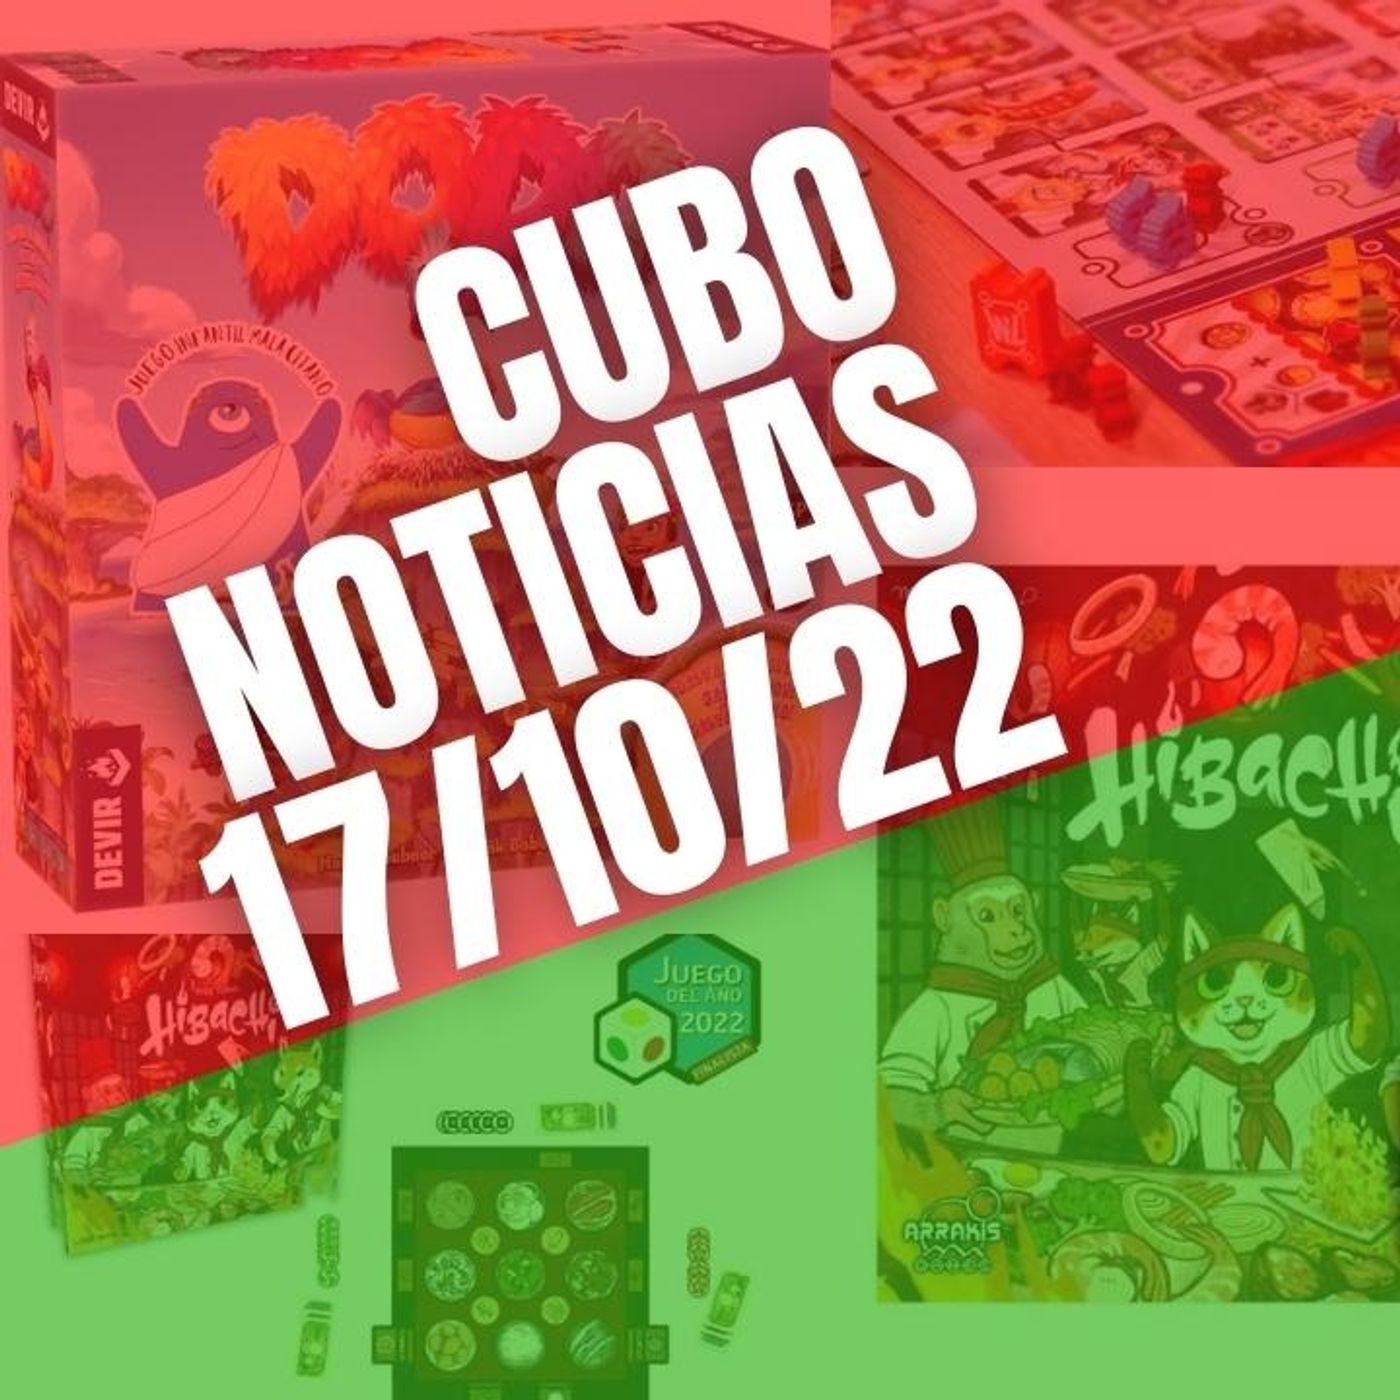 #CuboNoticias 17/10/22